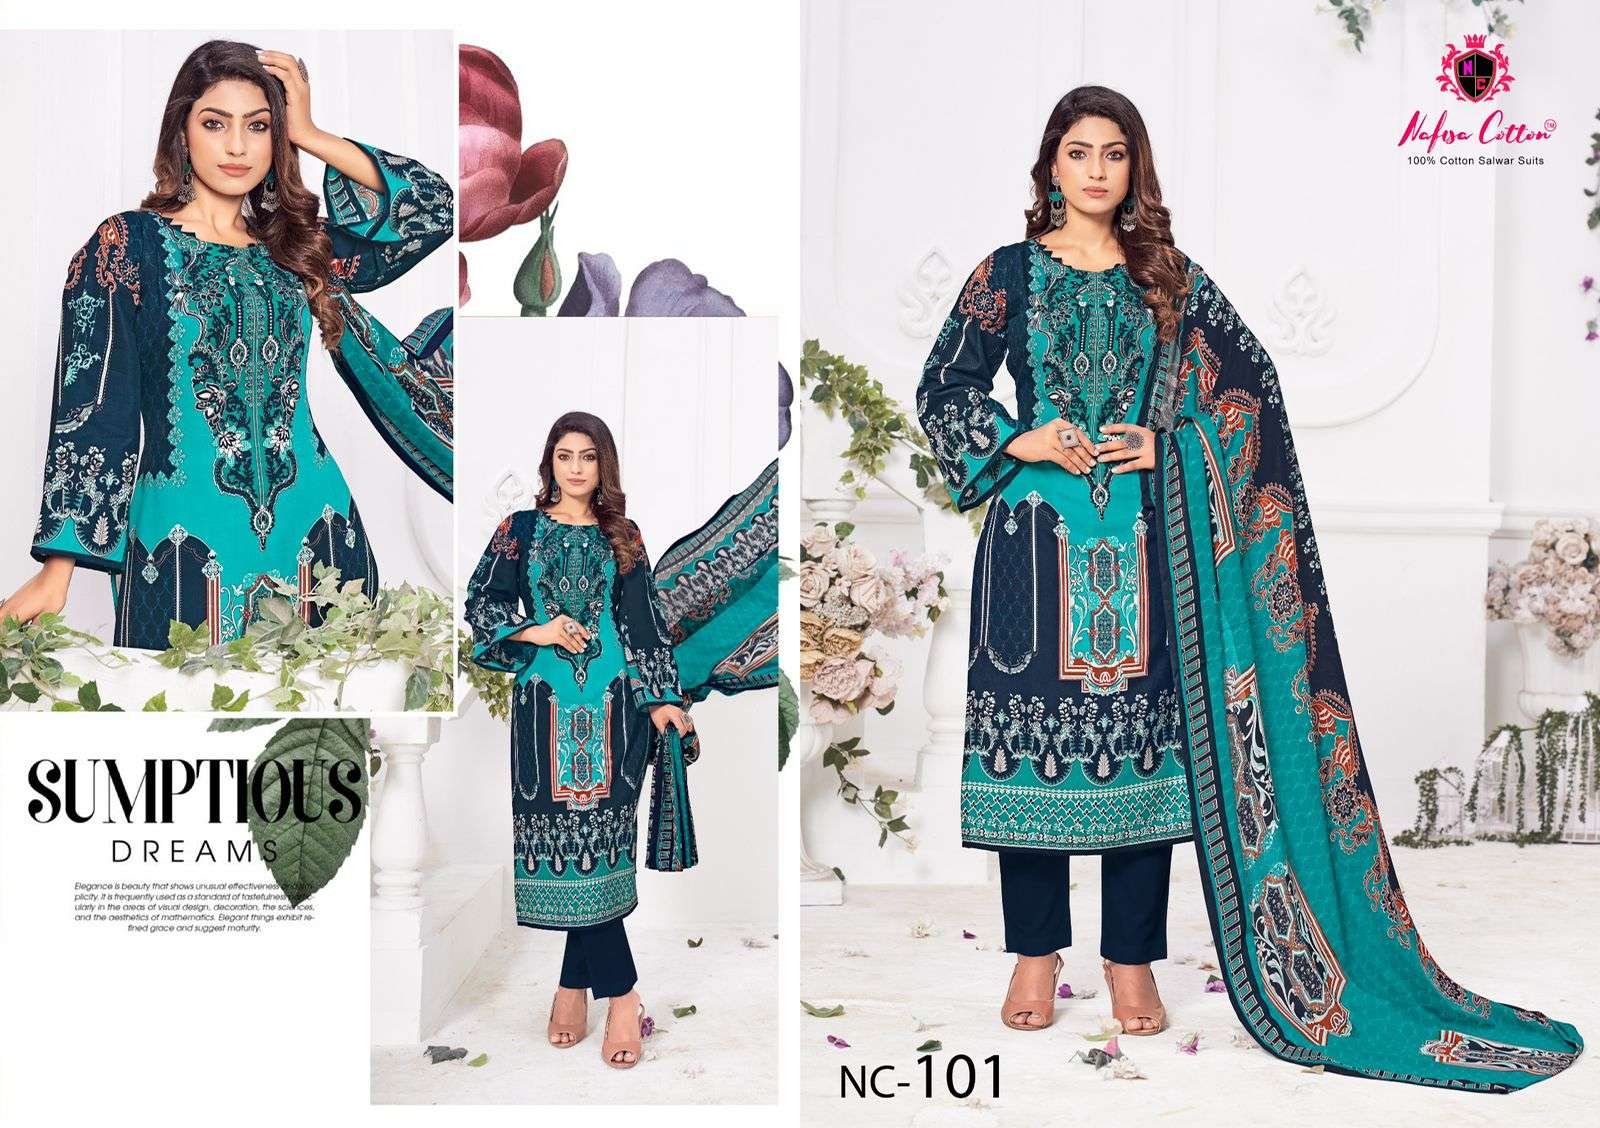 nafisha cotton andaaz karachi suits 1001-1006 series latest pakistani salwar kameez wholesaler surat gujarat